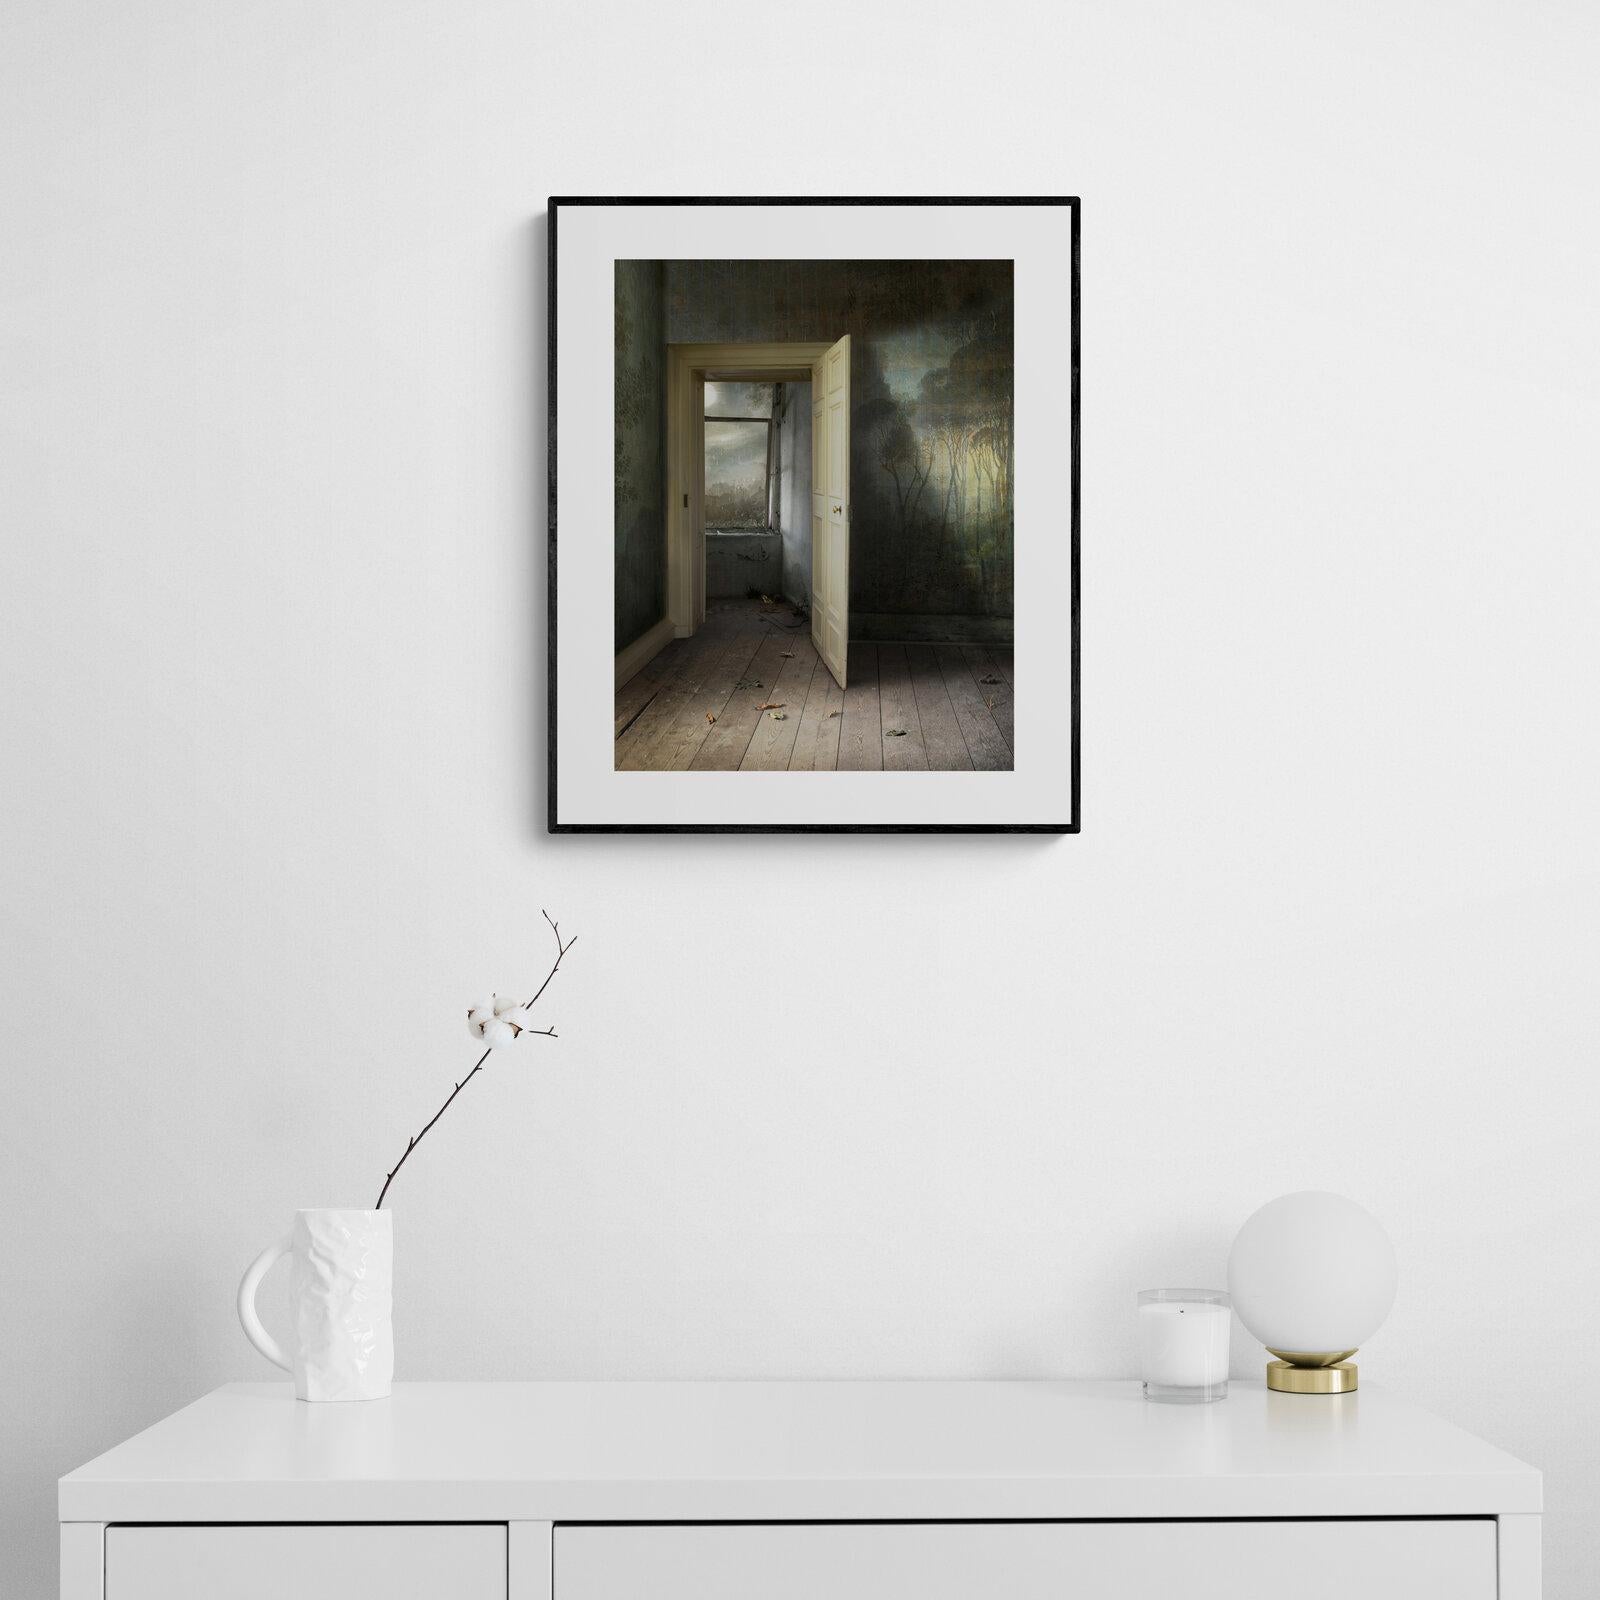 Interieur mit offener Tür – Fotomontage, Archivalisches Pigmentdruck, Inneneinrichtung – Photograph von Suzanne Moxhay